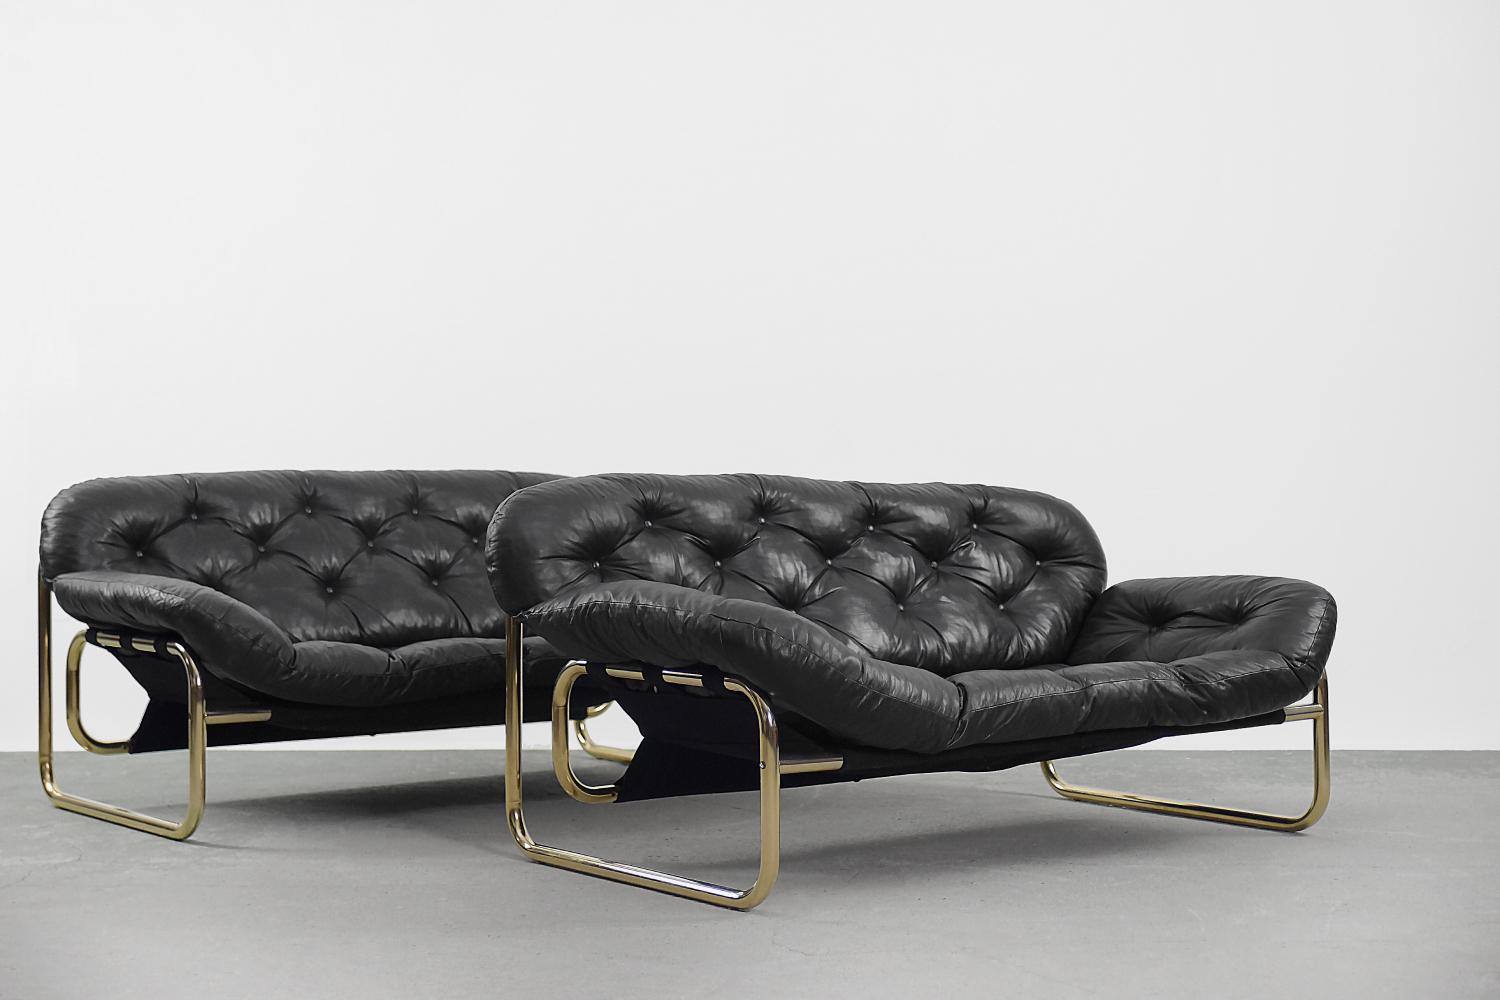 Vintage Scandinavian Leather Black Sofa by John-Bertil Häggström for Swed-Form For Sale 4